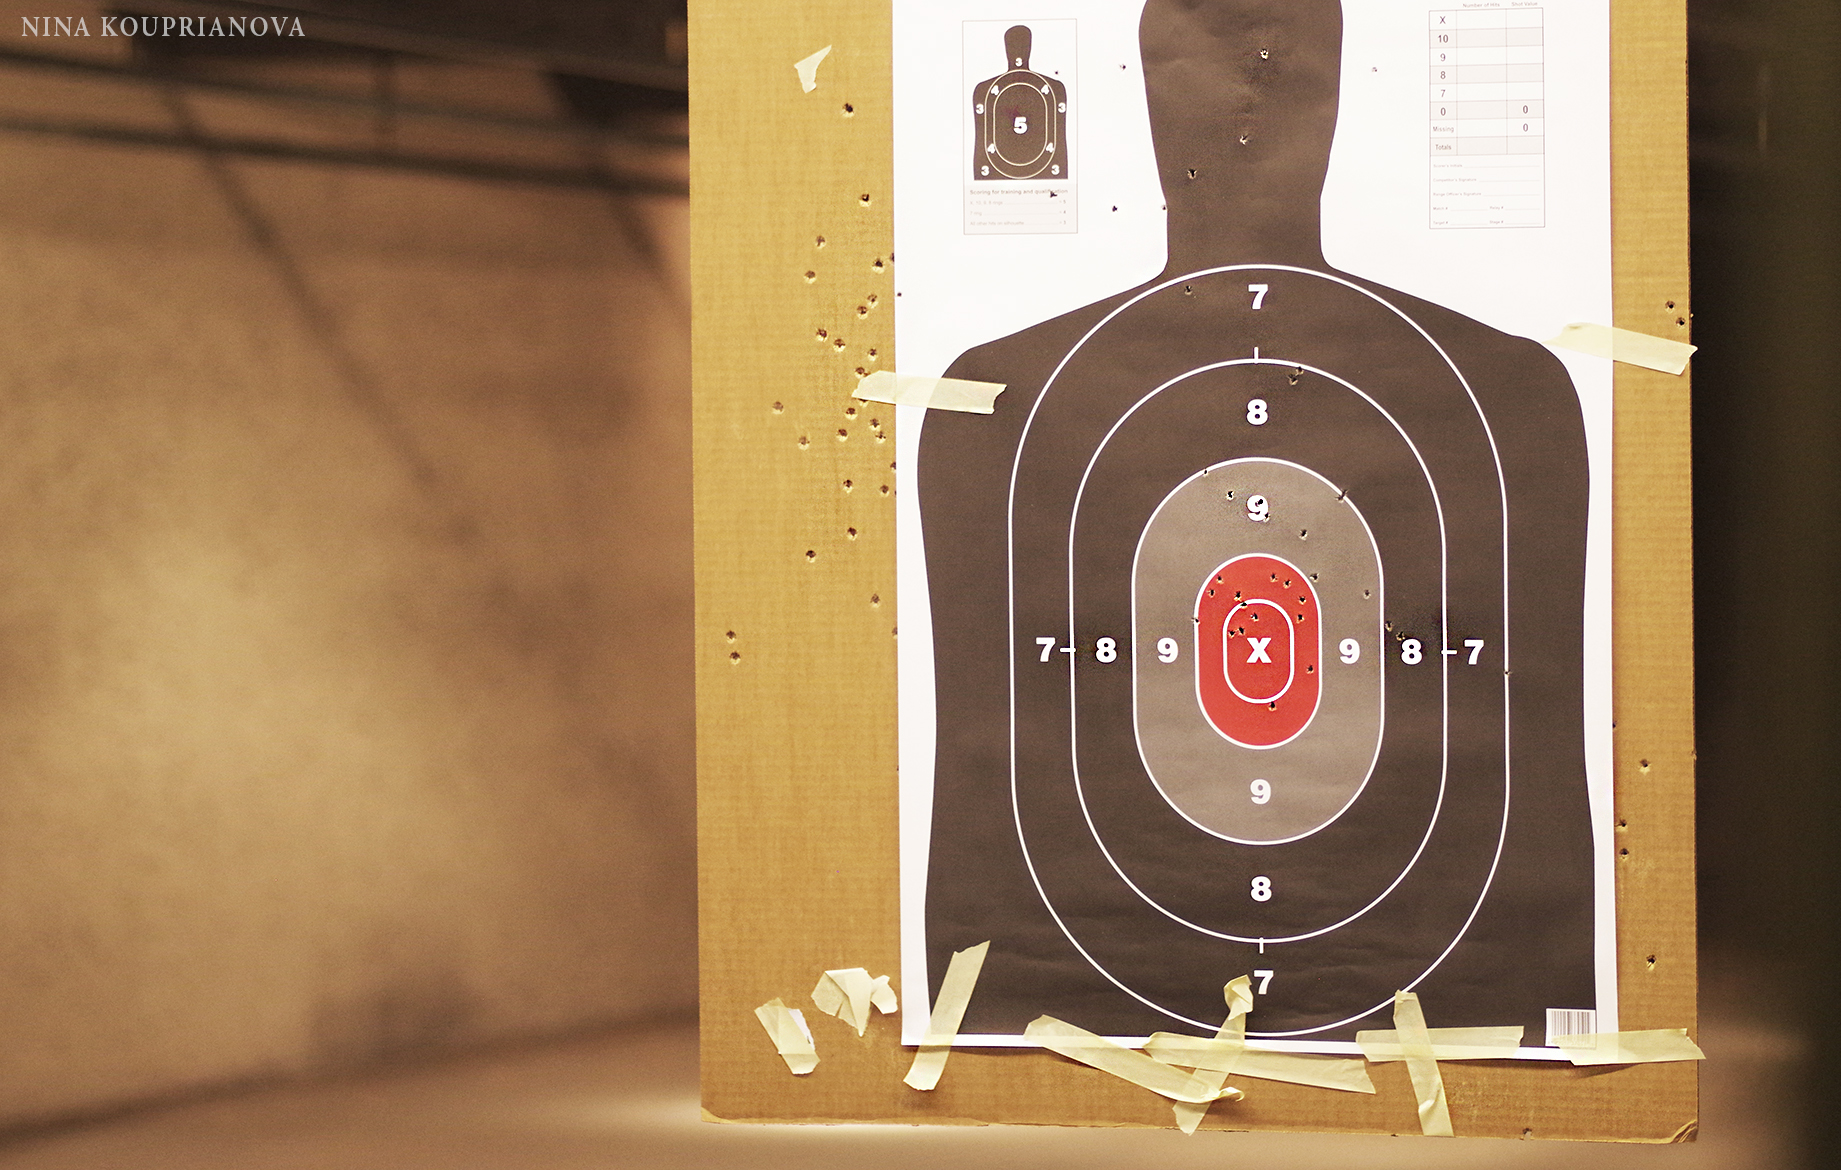 shooting range target 2 2000 px.jpg